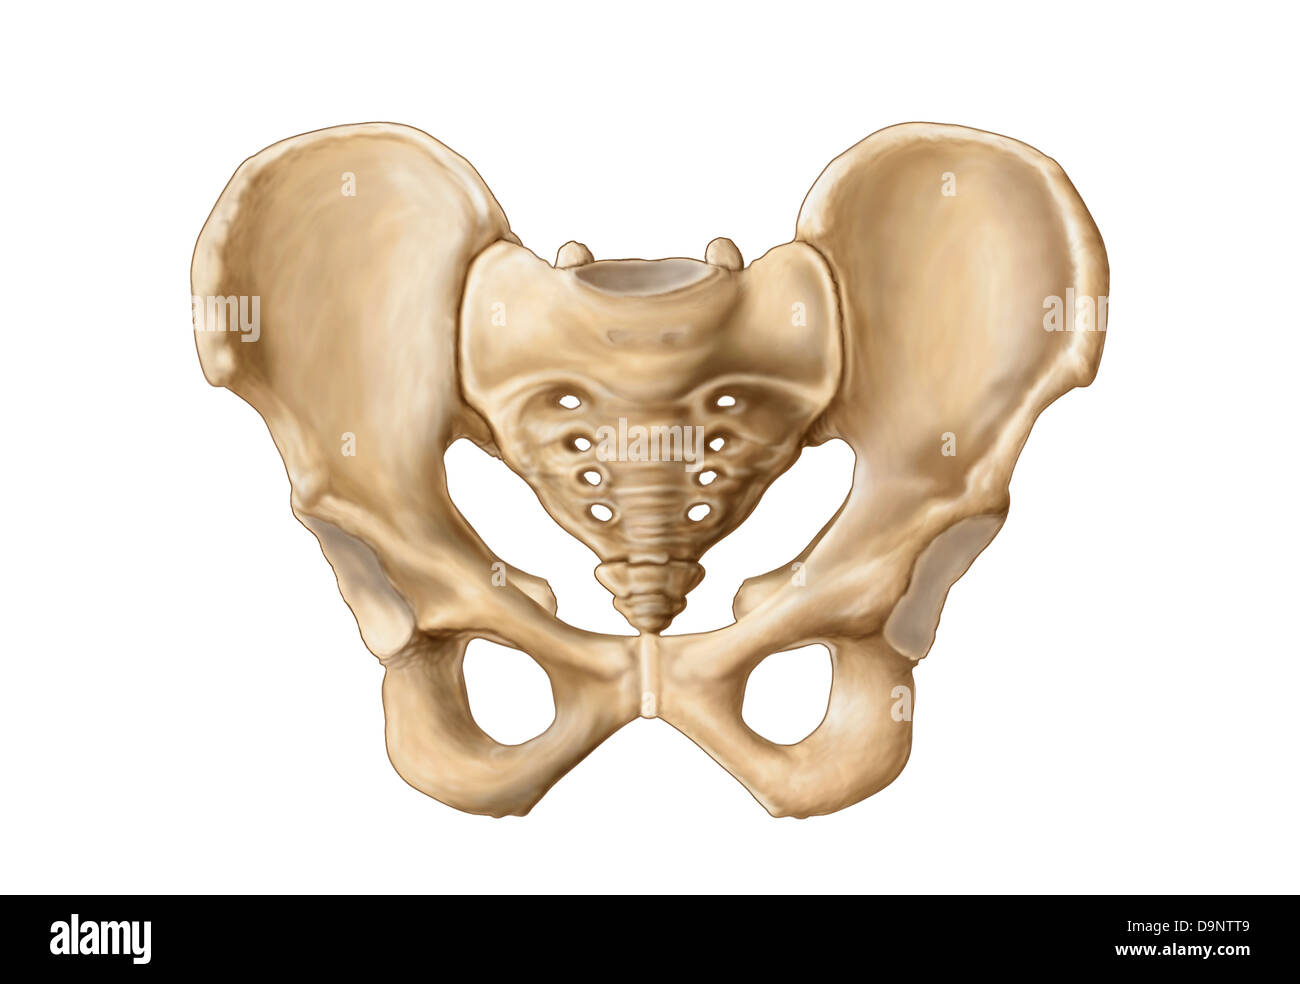 Anatomia umana di osso pelvico. Foto Stock